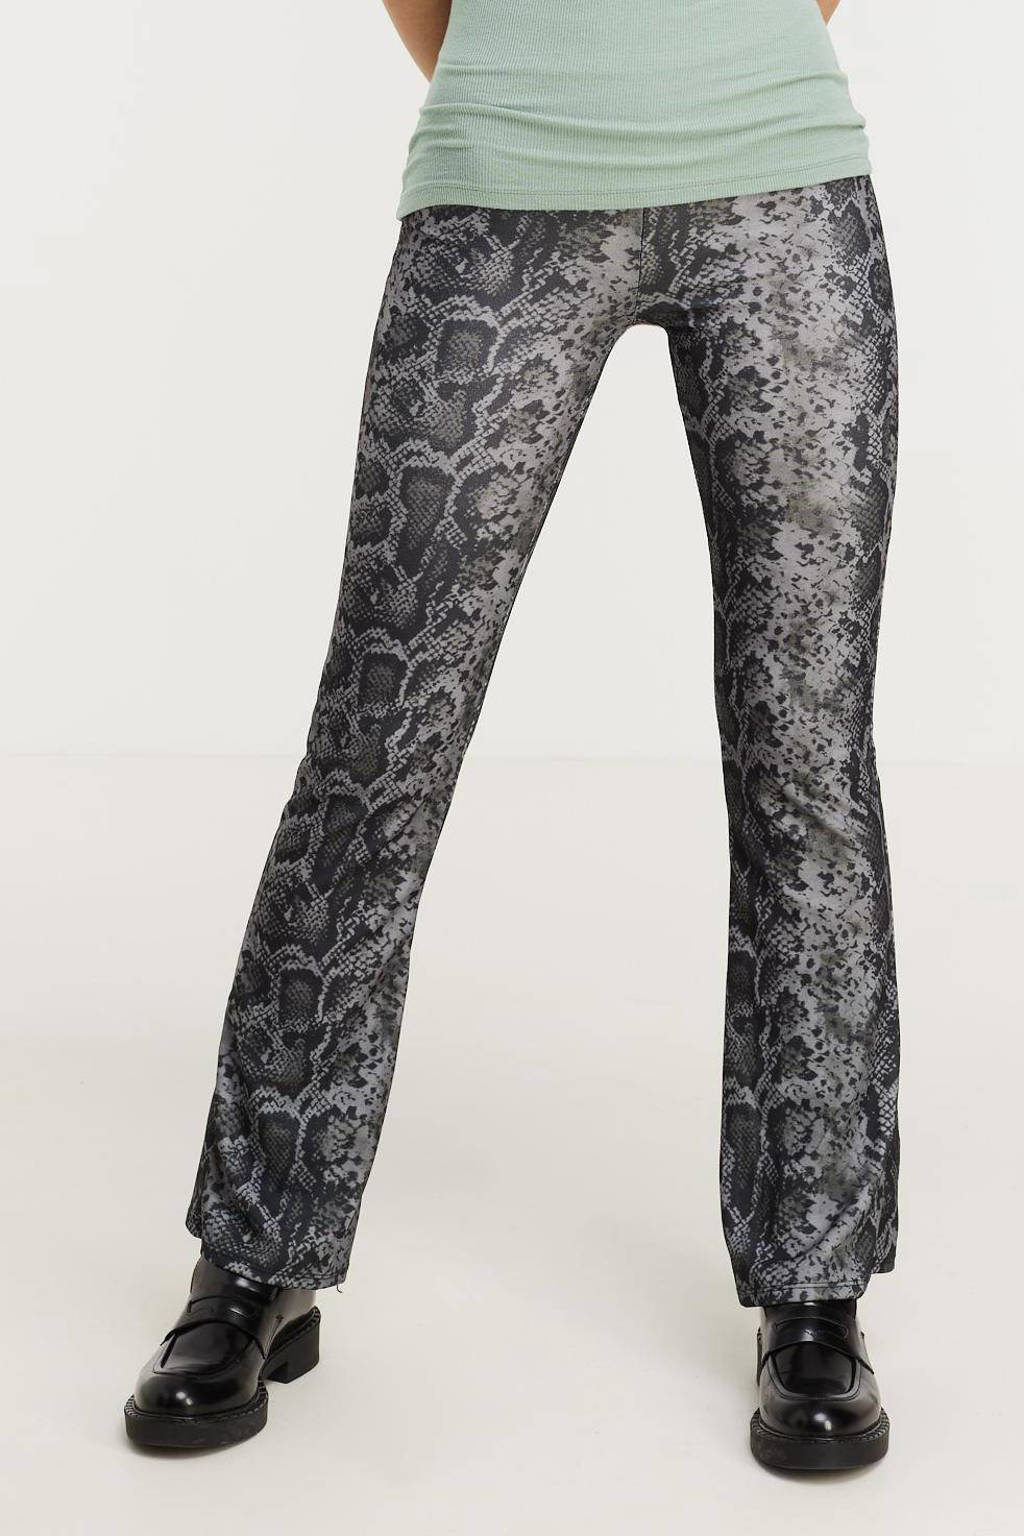 Zwart en grijze dames Hailys flared legging van polyester met regular waist, elastische tailleband en slangenprint